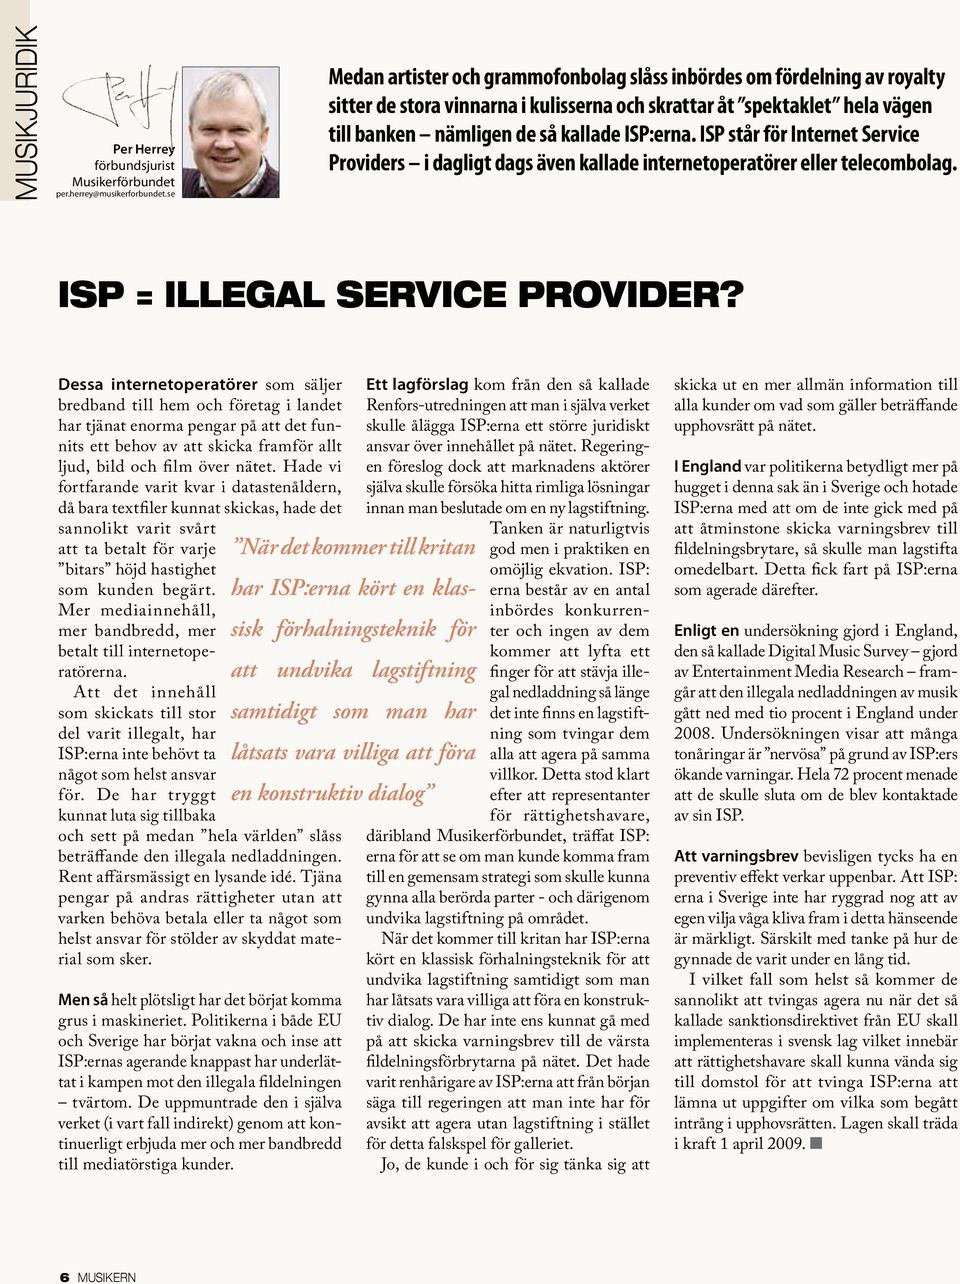 ISP står för Internet Service Providers i dagligt dags även kallade internetoperatörer eller telecombolag. ISP = Illegal Service provider?